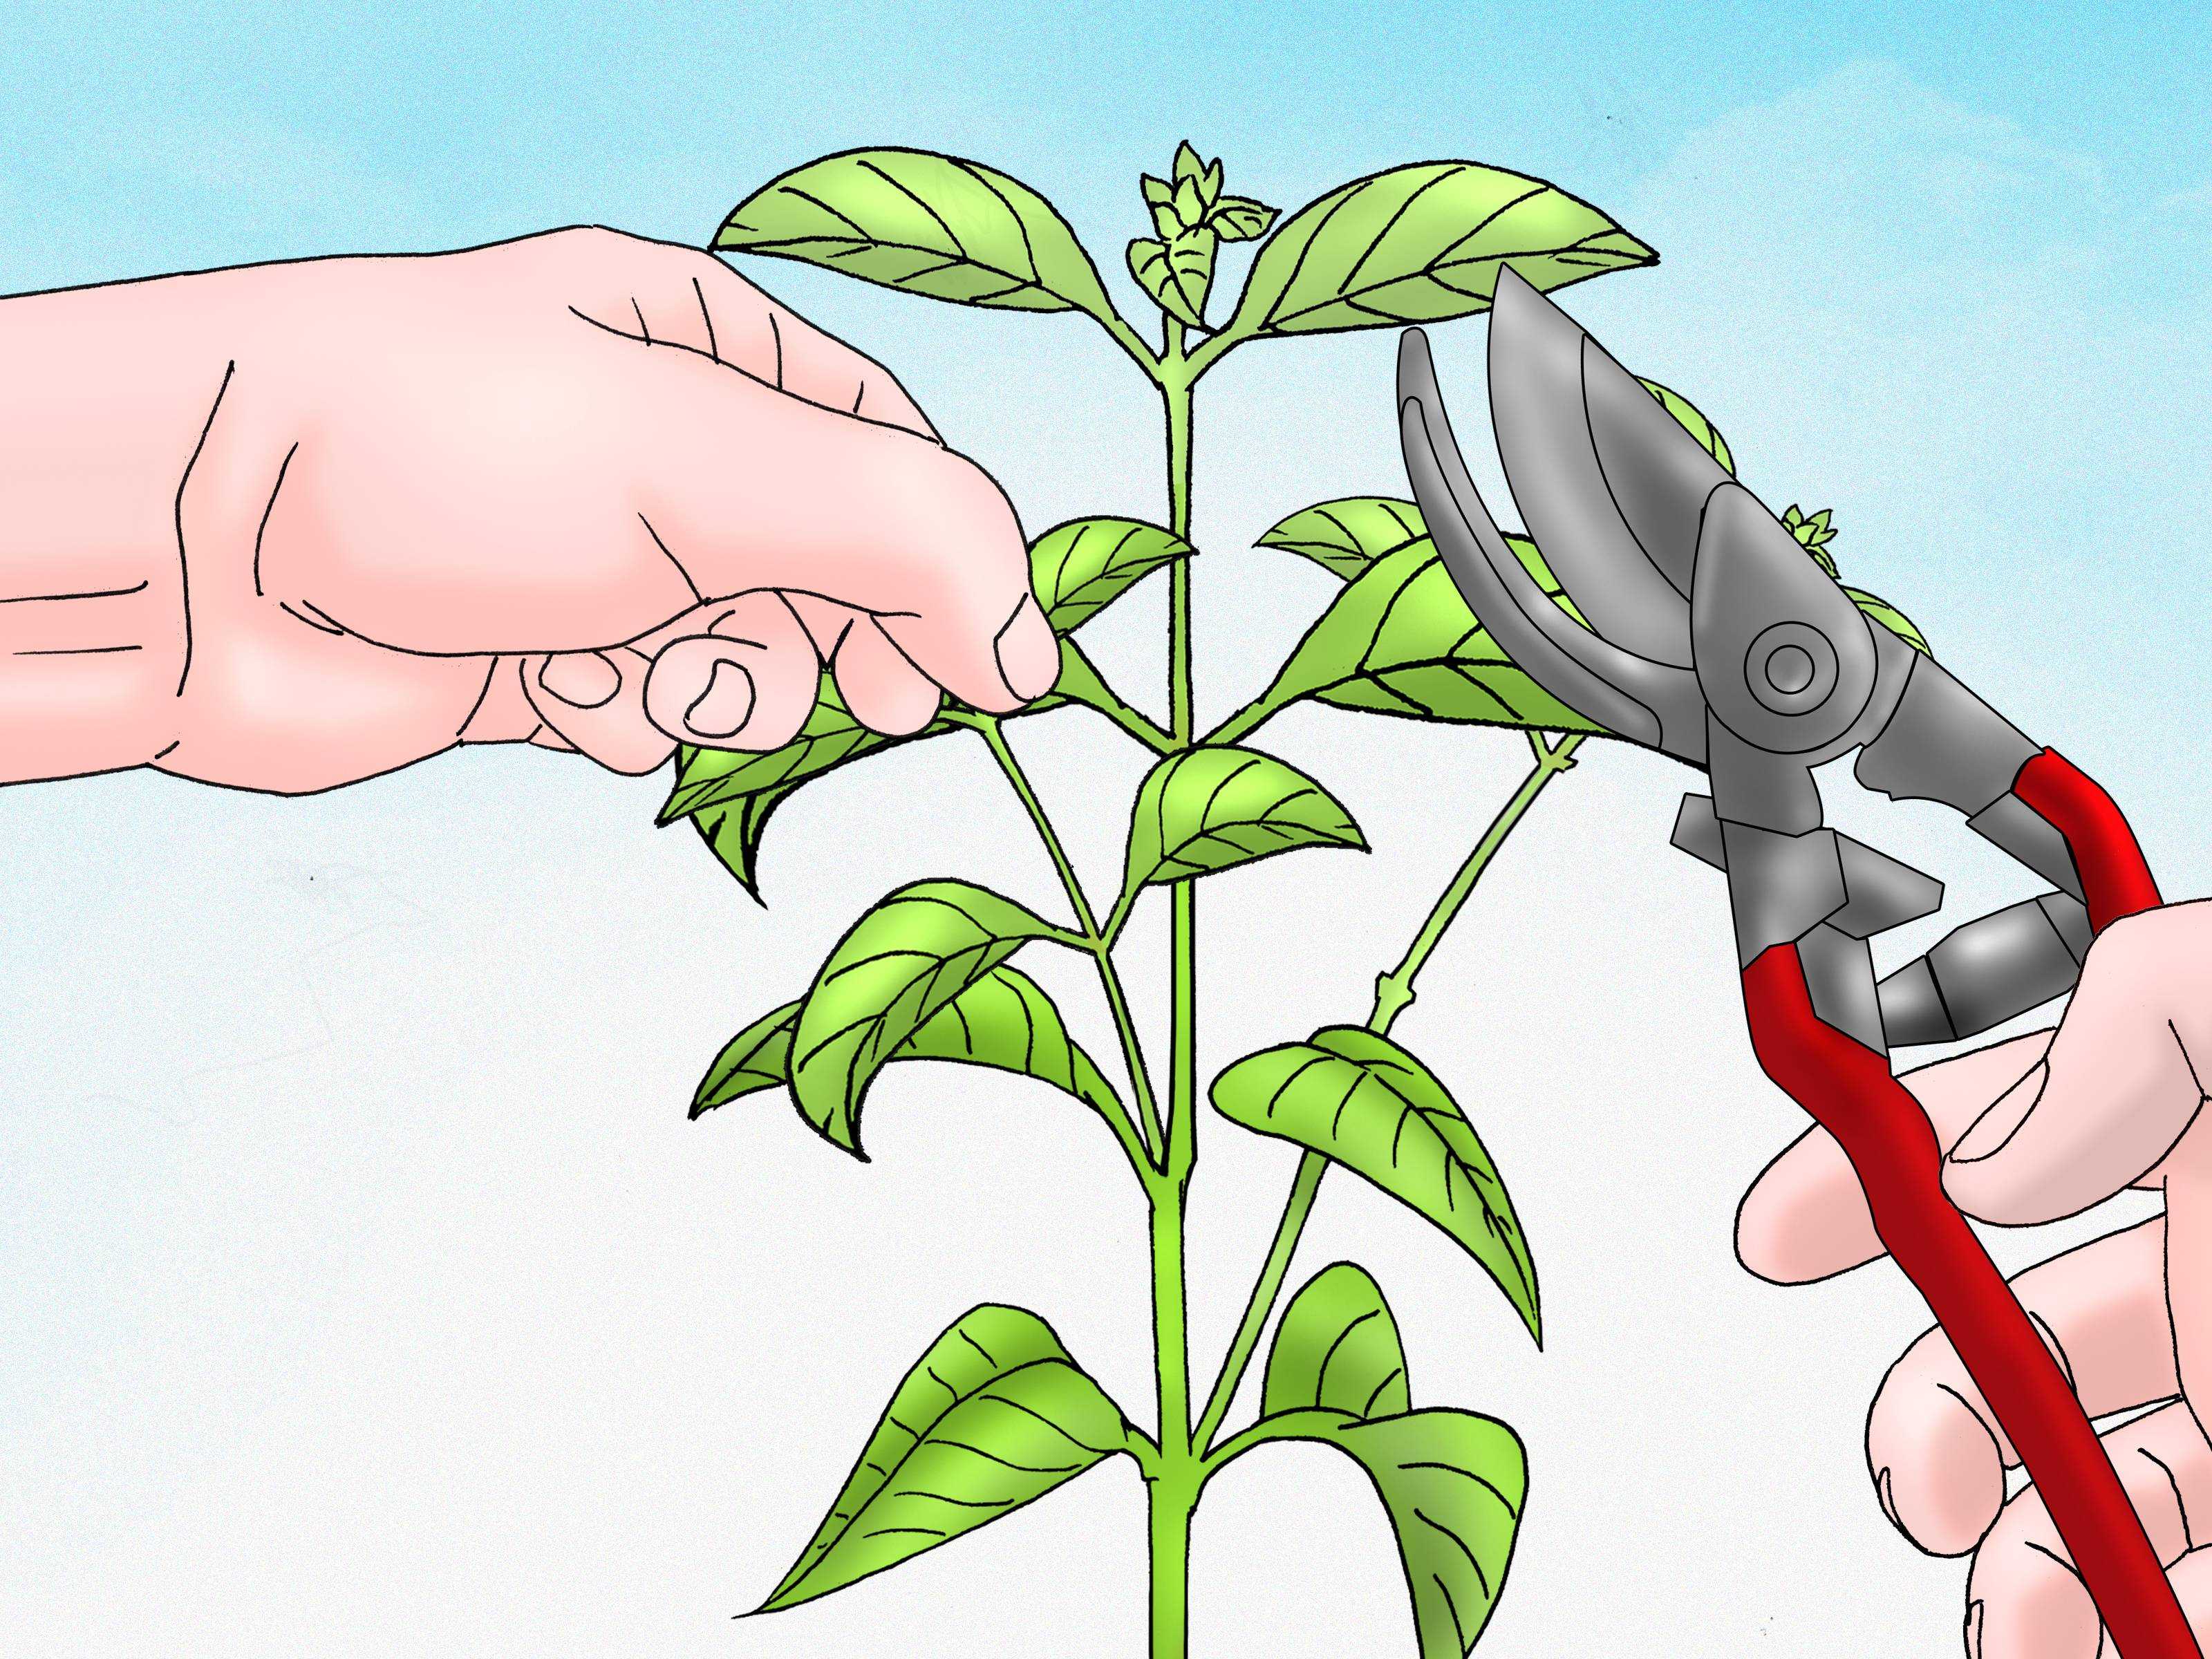 Что значит прищипывание: правила прищипывания растений